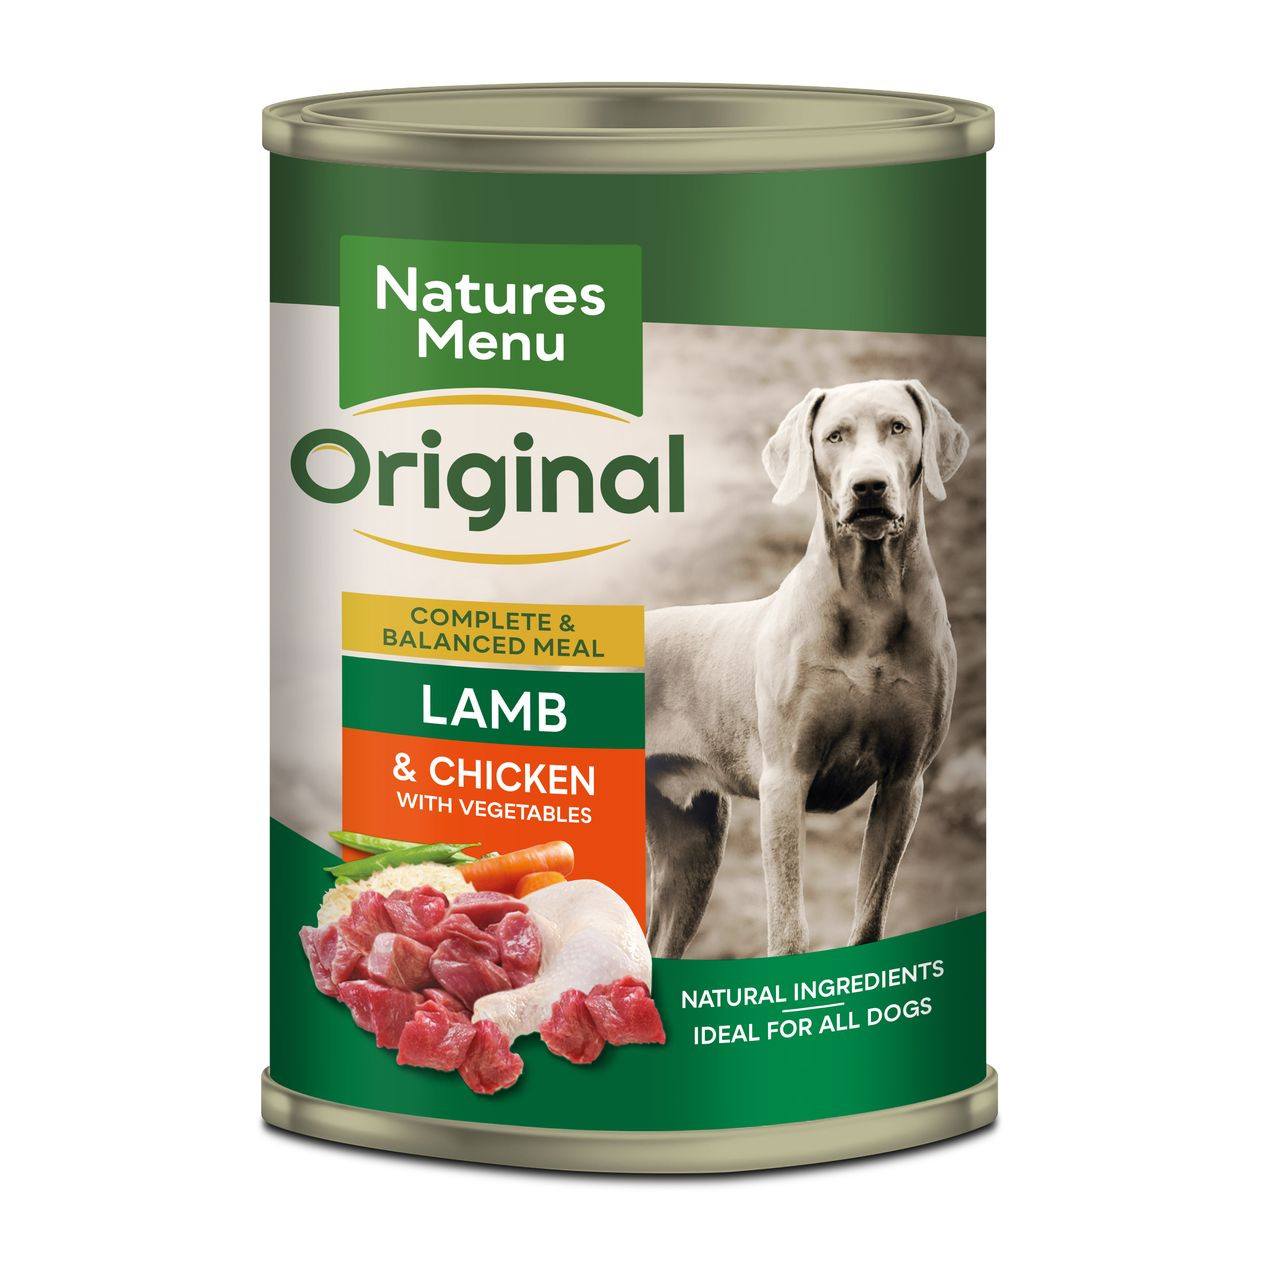 Natures Menu Canned Dog Food VioVet.co.uk FREE